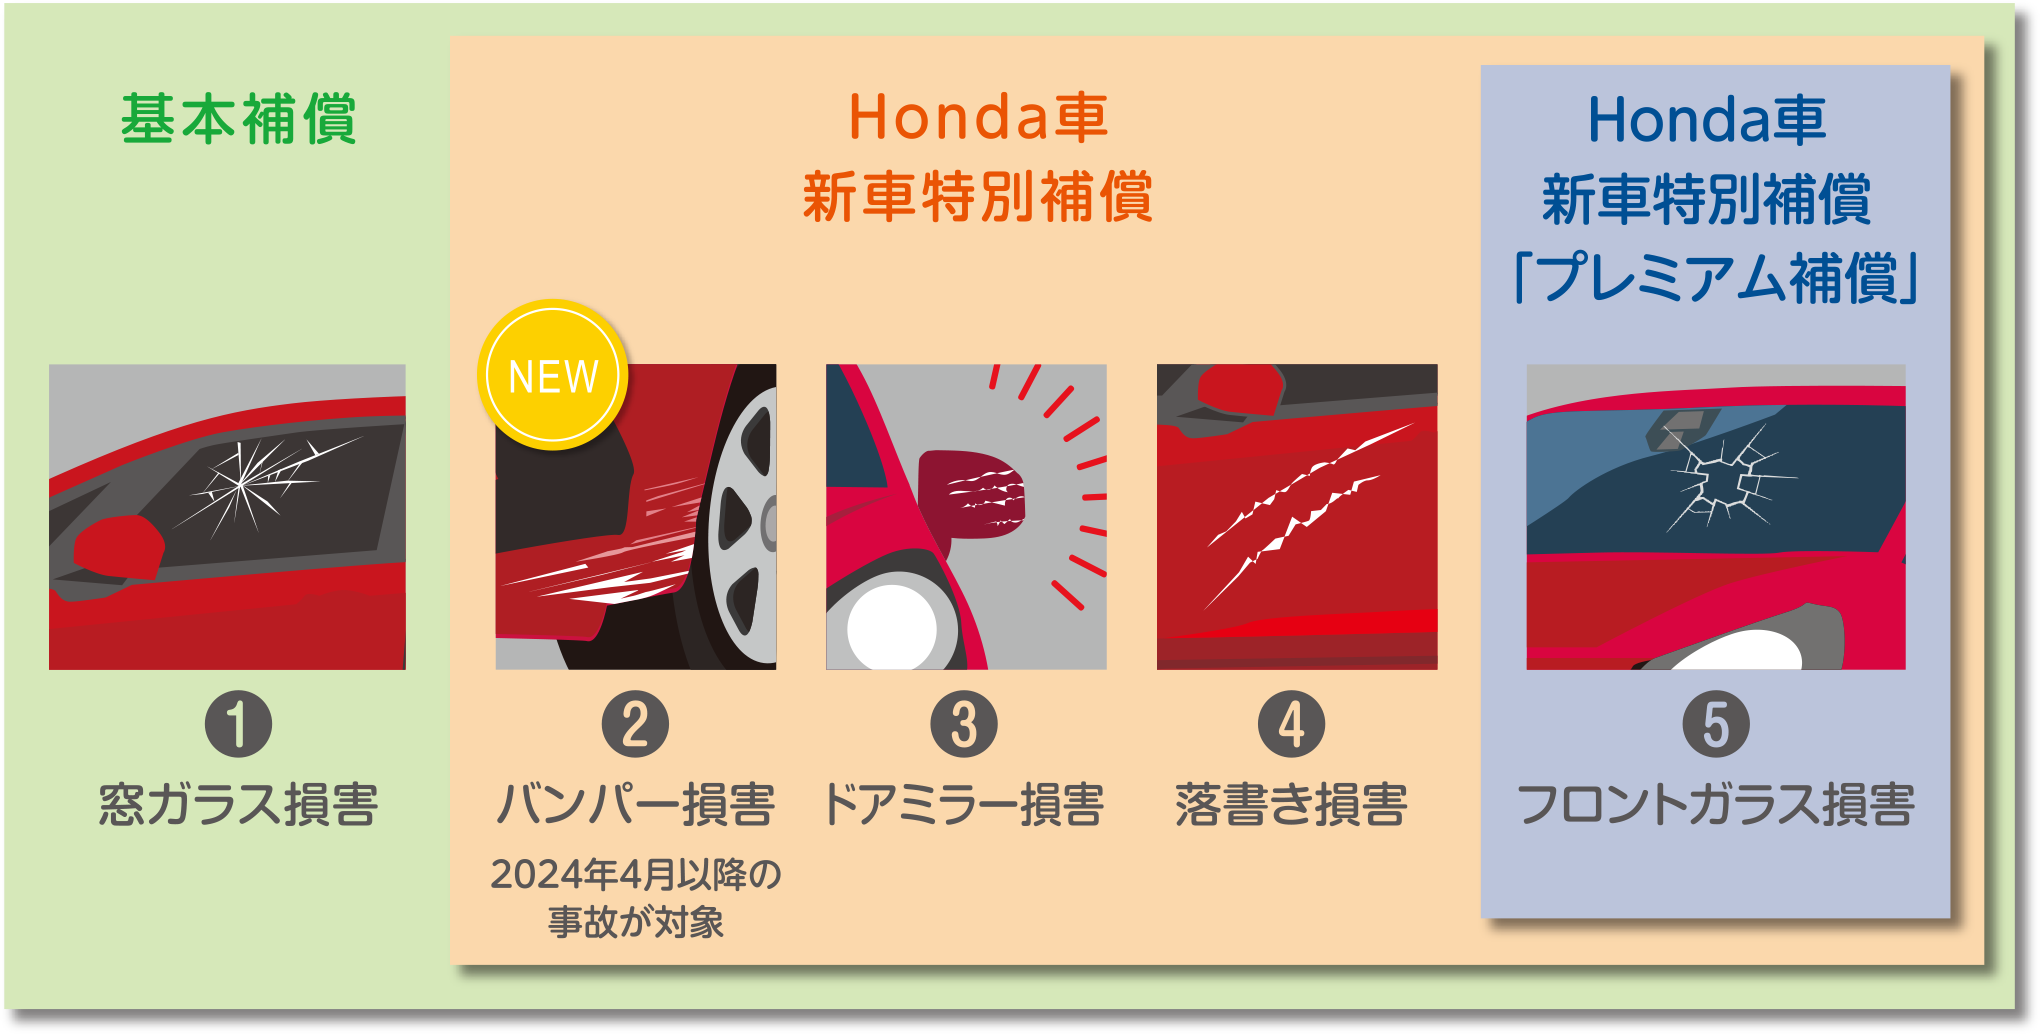 基本保証 / Honda車新車特別補償